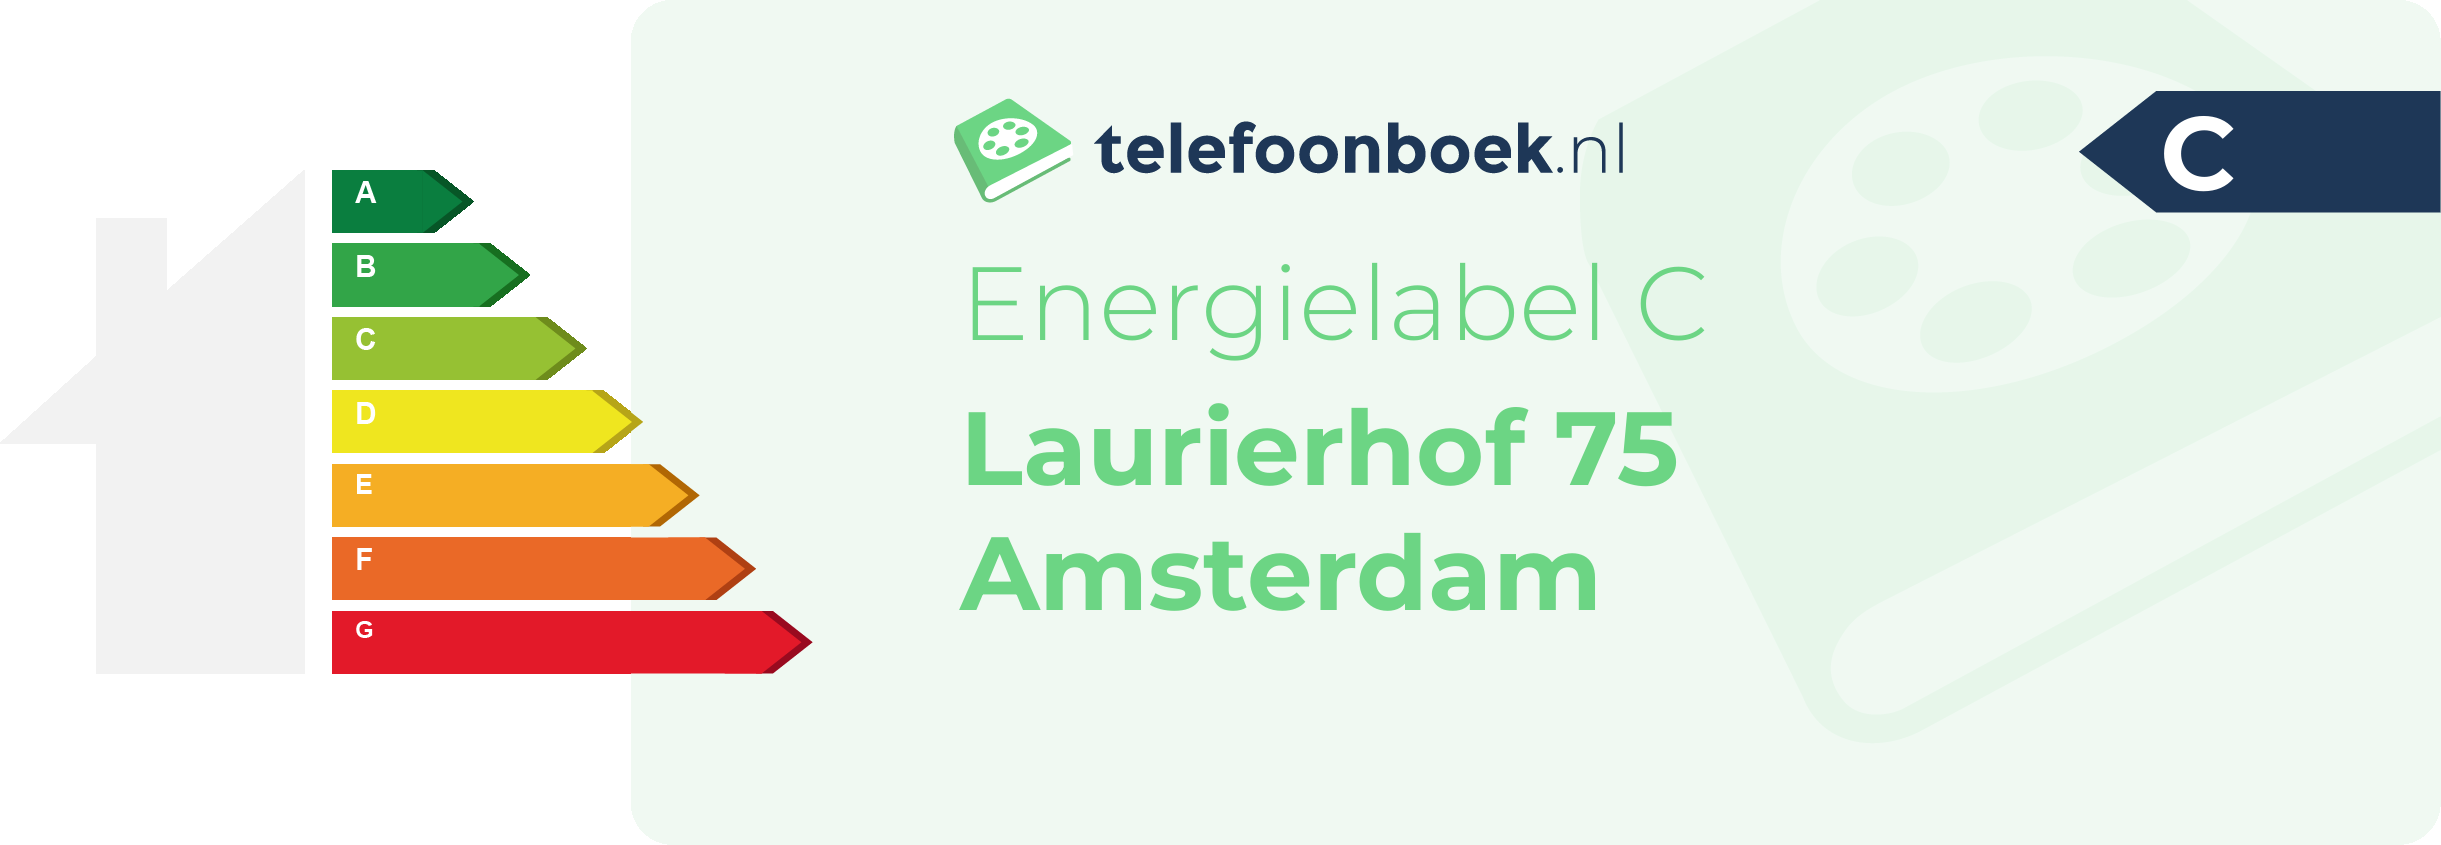 Energielabel Laurierhof 75 Amsterdam